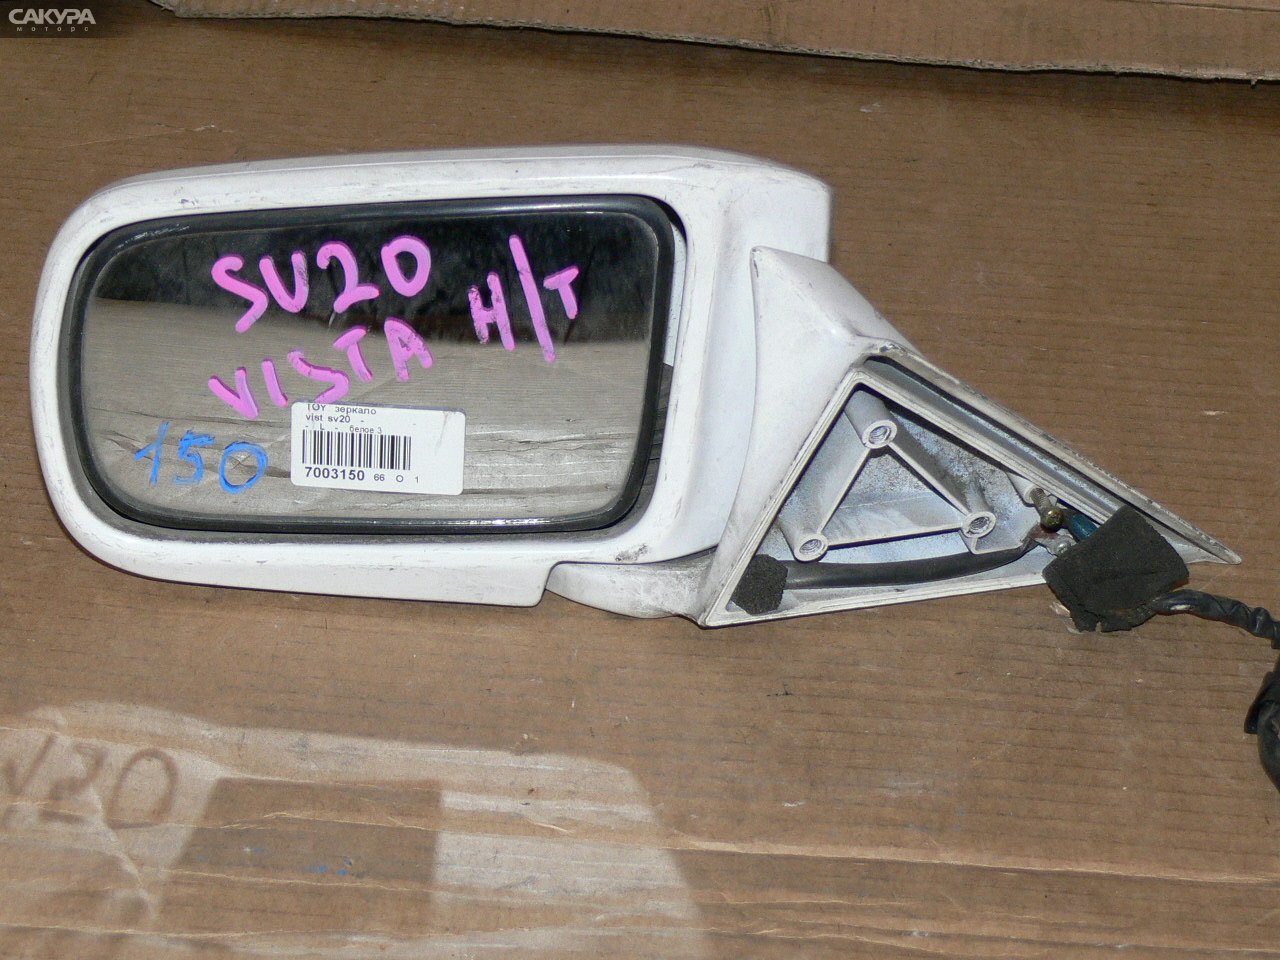 Зеркало боковое левое Toyota Vista SV20 1S-i: купить в Сакура Иркутск.